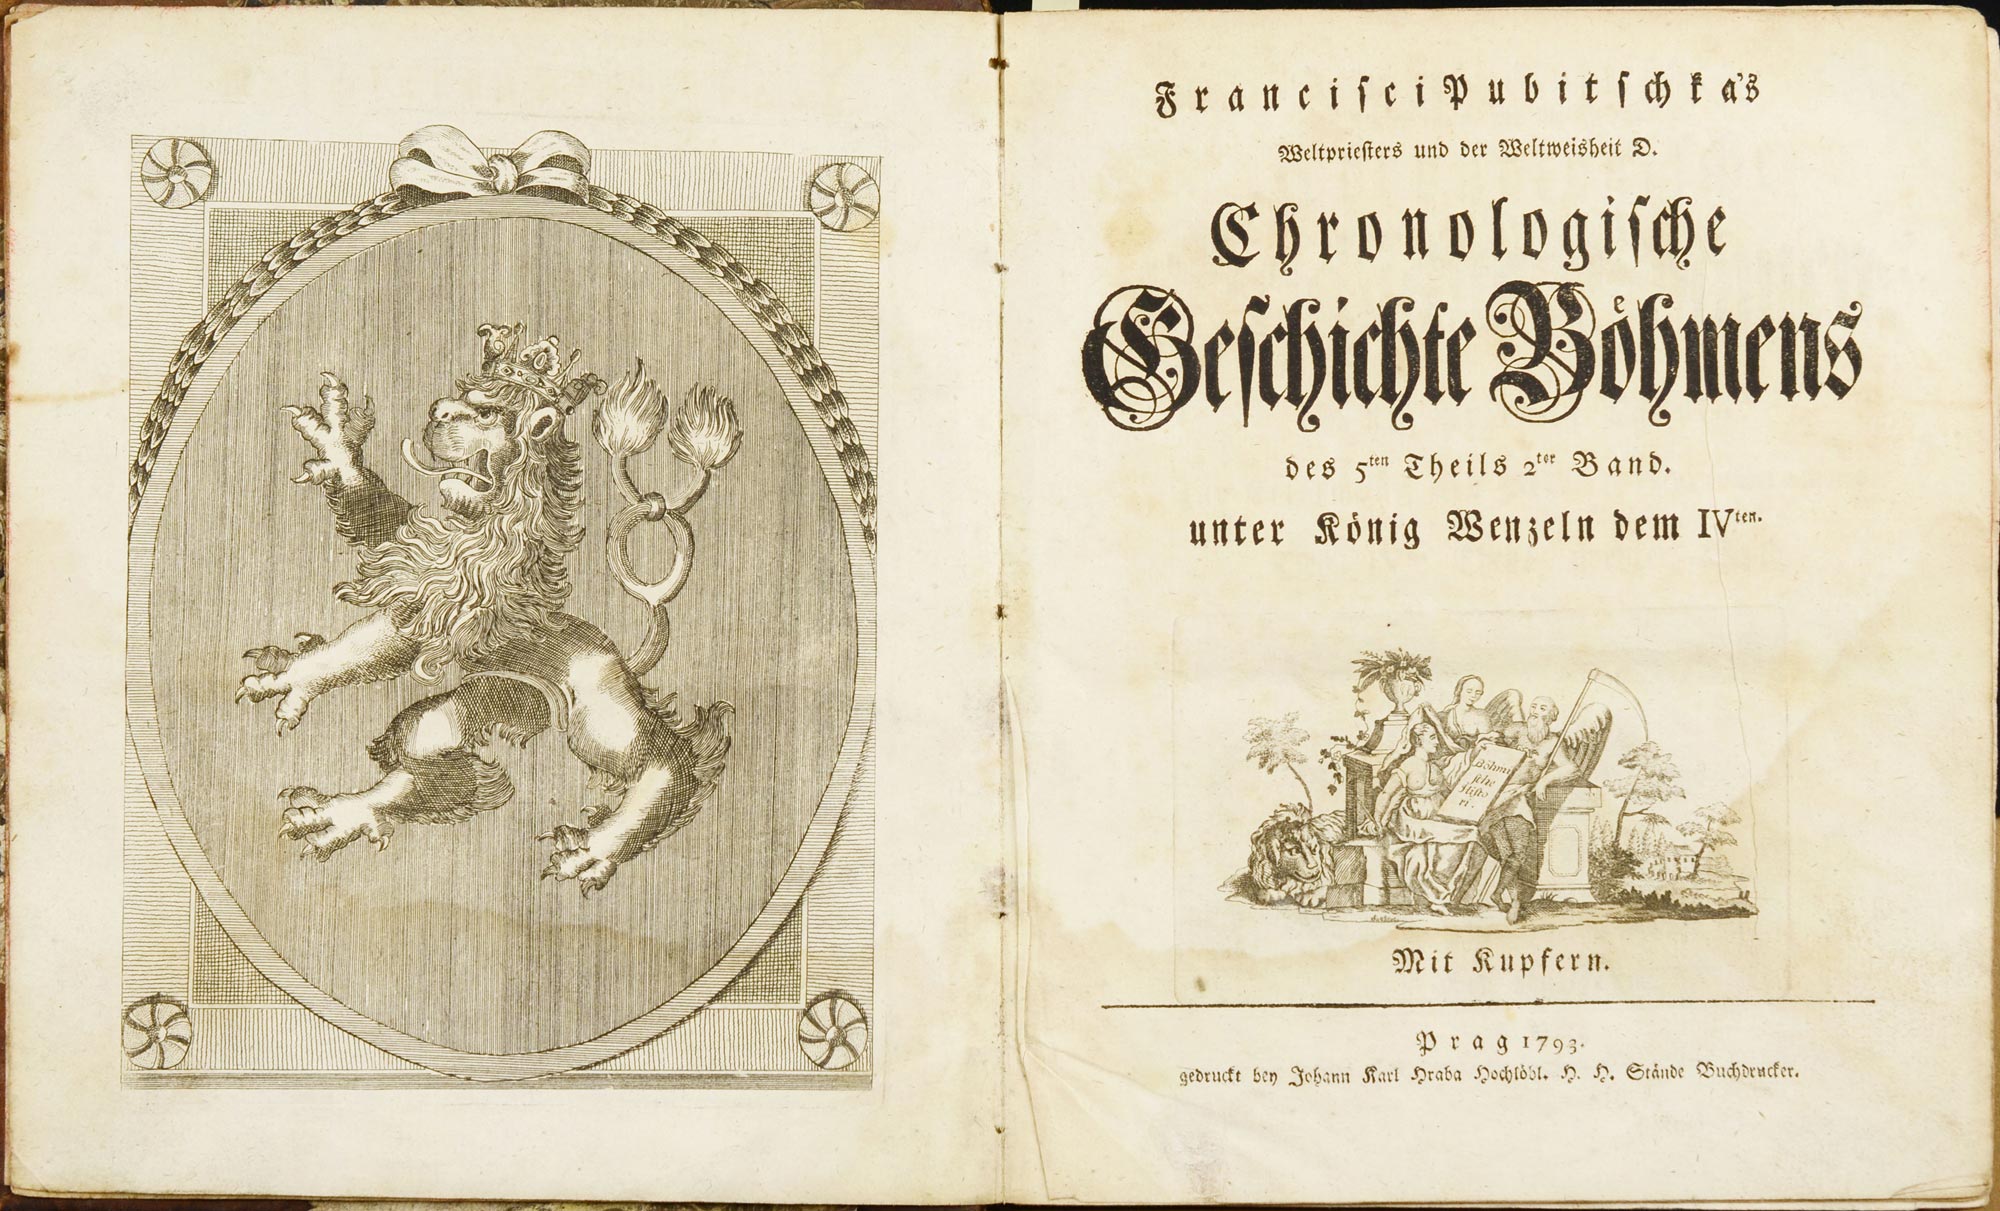 František Pubicka (1722-1807)  "CHRONOLOGISCHE GESCHICHTE BÖHMENS. Prague, 1793. Francisci